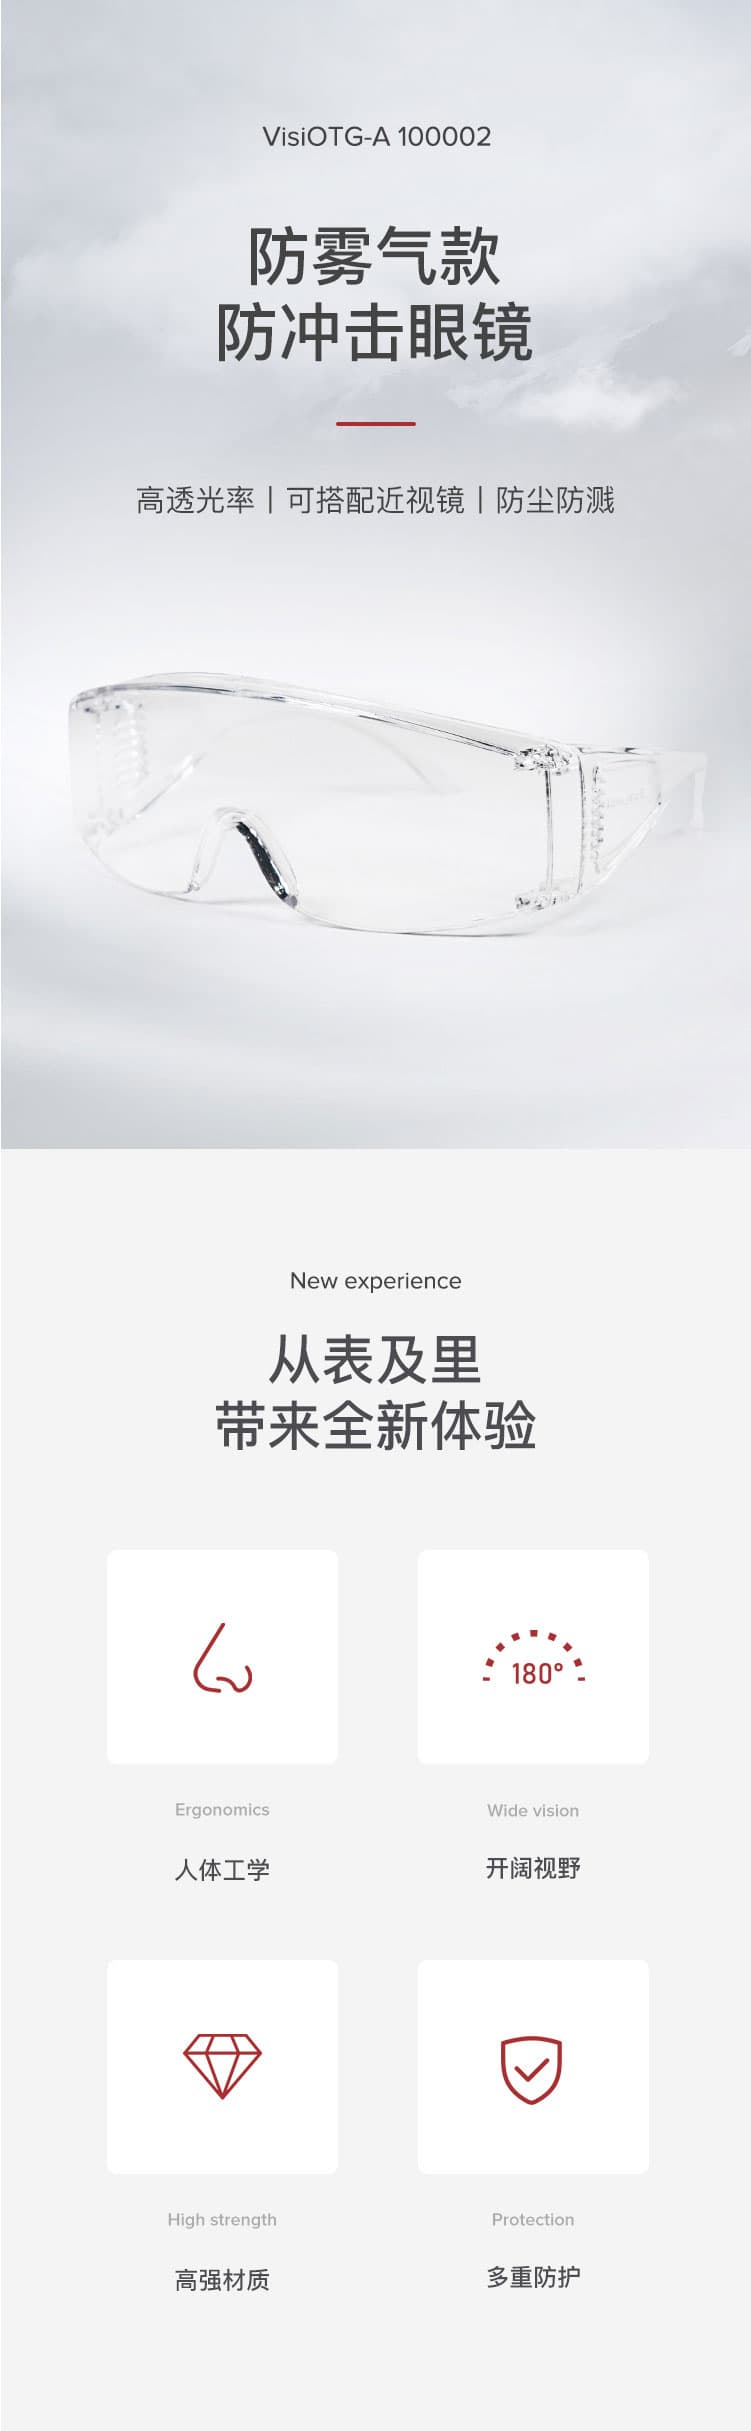 霍尼韦尔 100002 VisiOTG-A 透明防雾镜片 访客眼镜